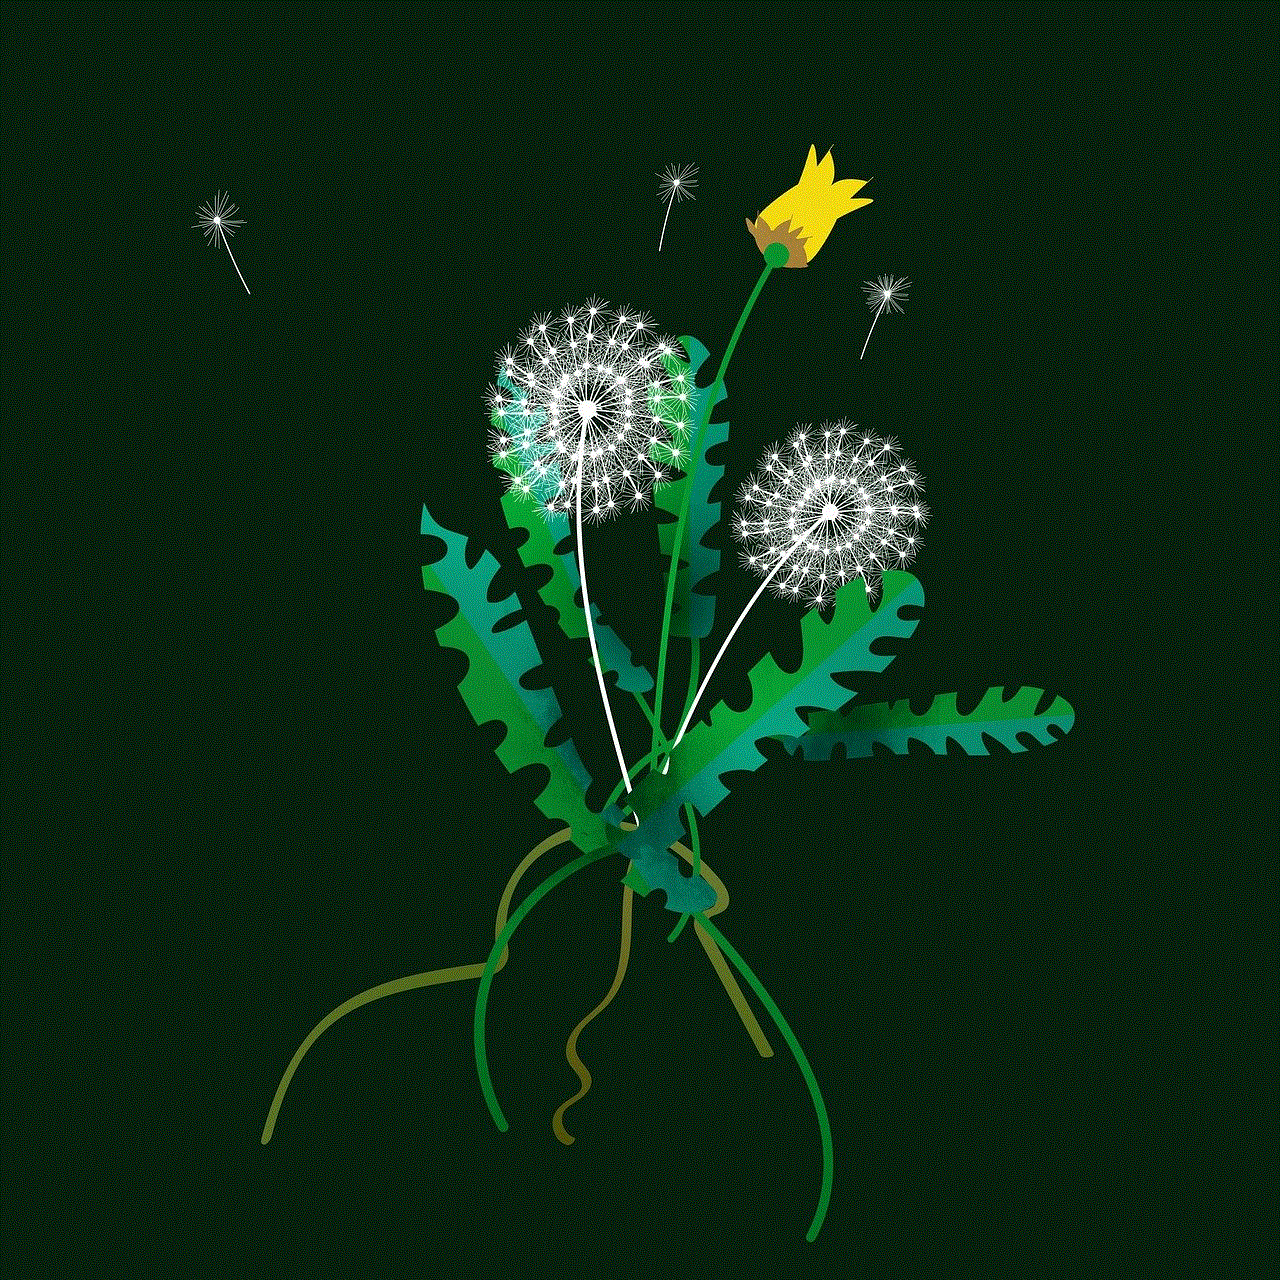 Dandelion Plant